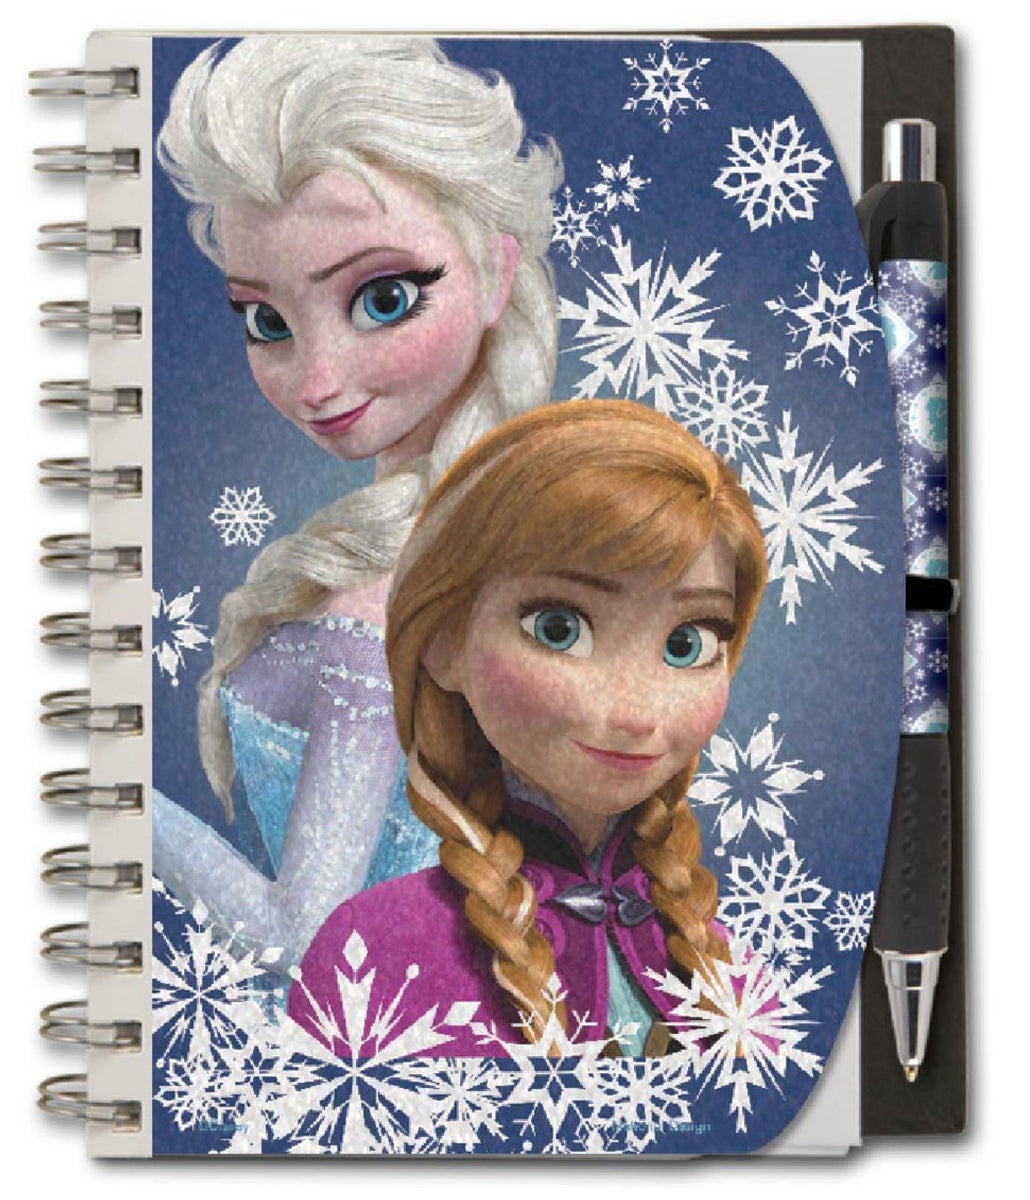 Notebooks Paint Frozen, Disney Princesses Book